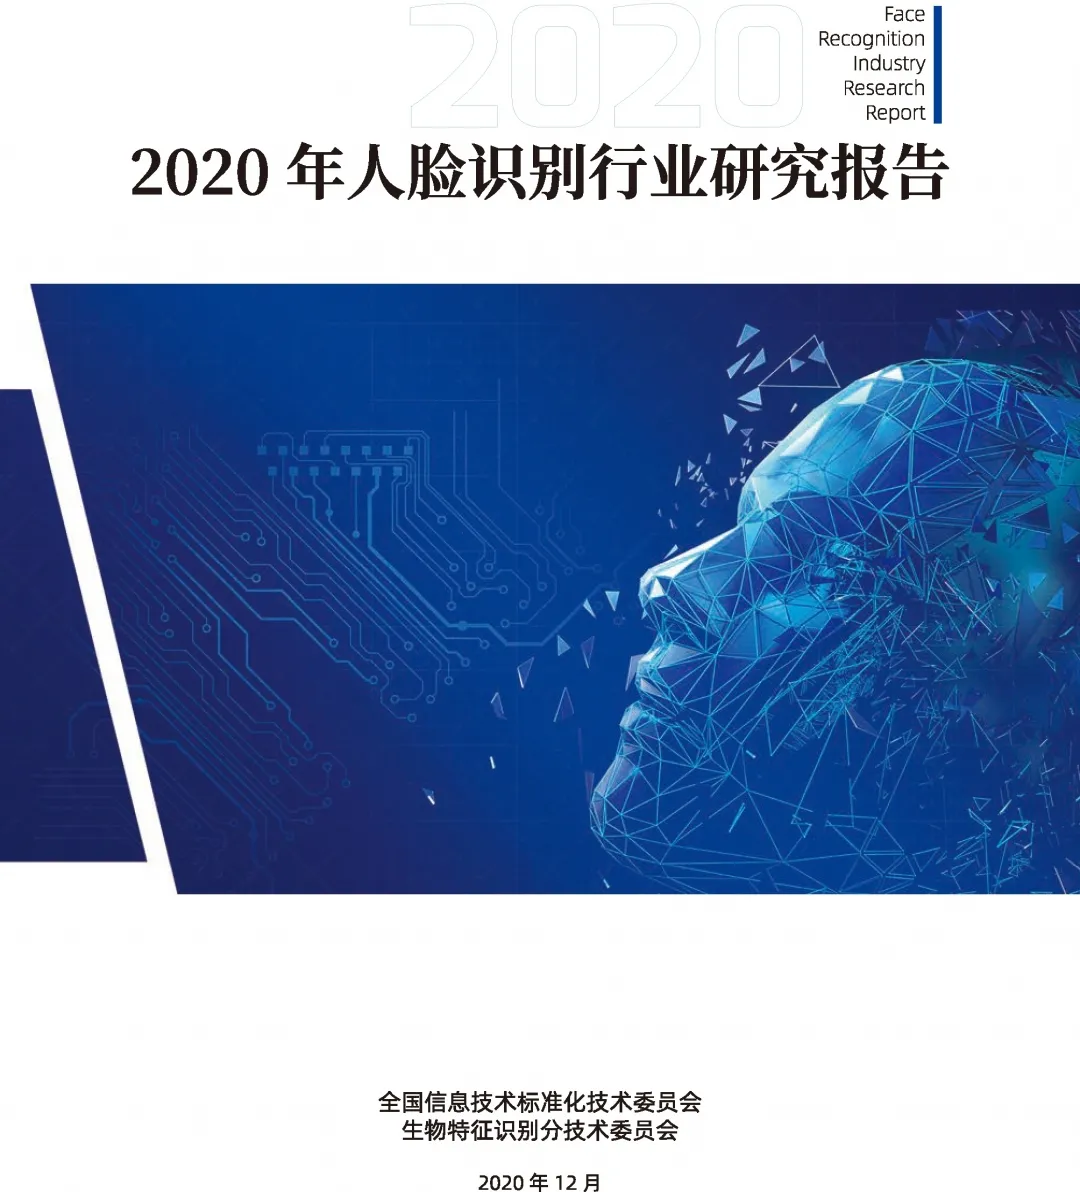 捷顺科技参与编写的《2020年人脸识别行业研究报告》正式发布